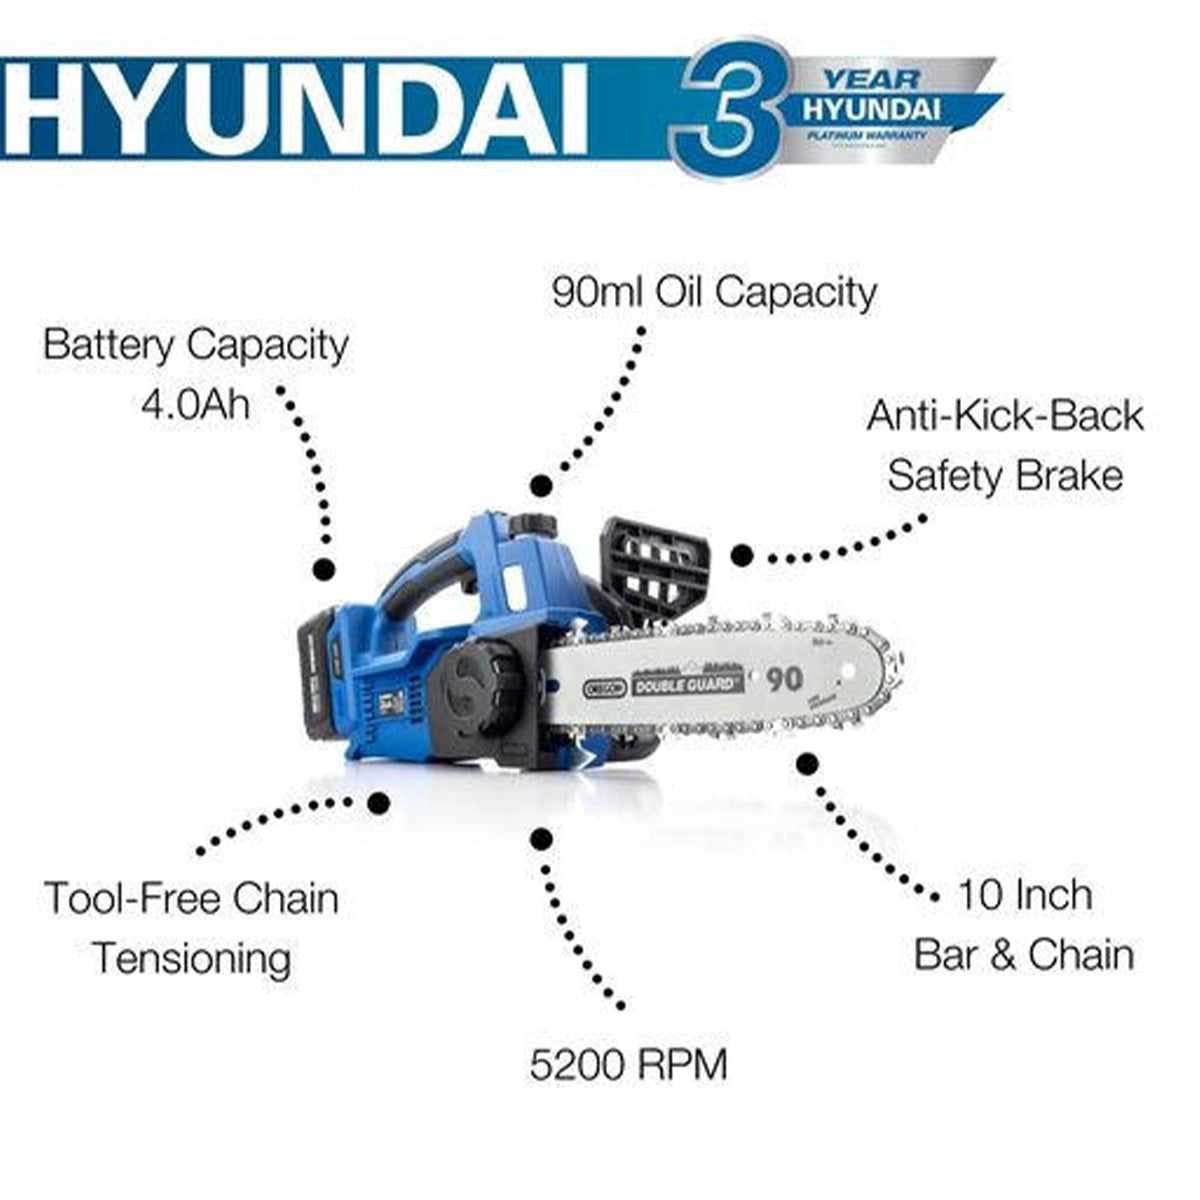 Hyundai HY2190 10" 20V Cordless Chainsaw Kit